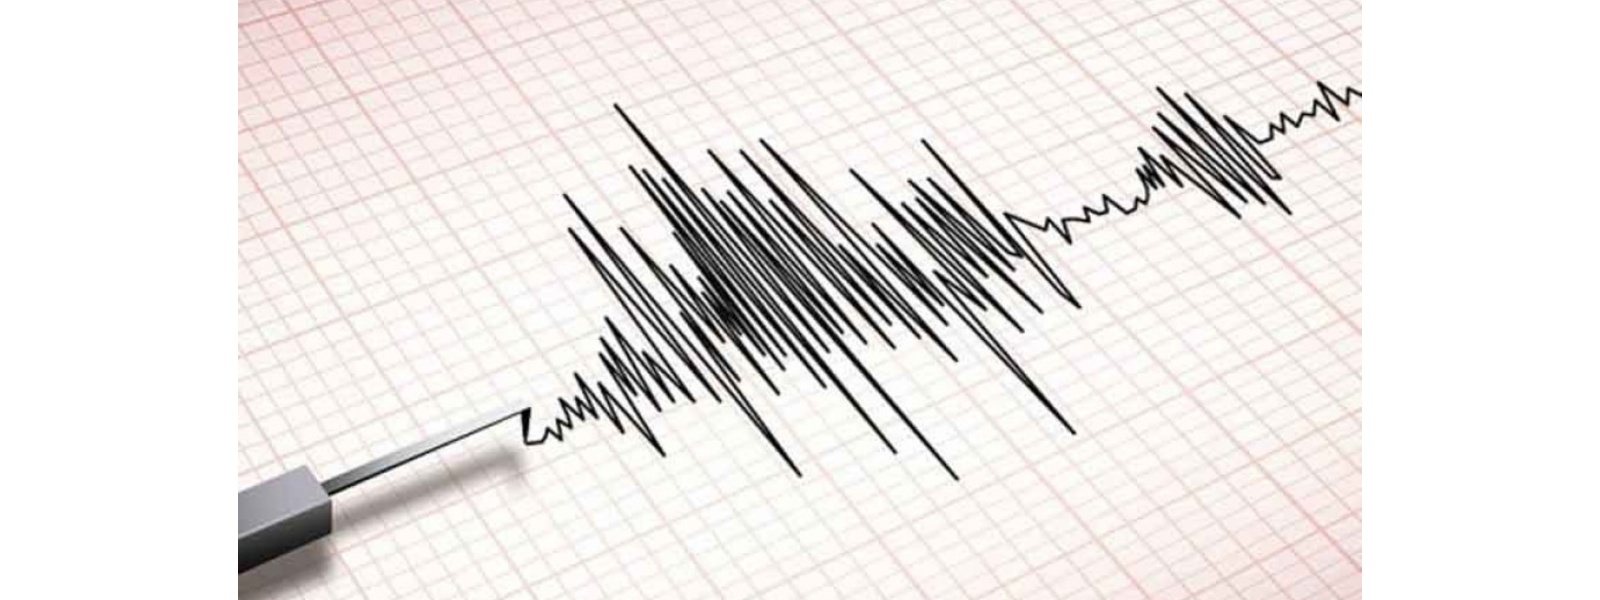 Magnitude 2.5 tremor in Sri Lanka’s South